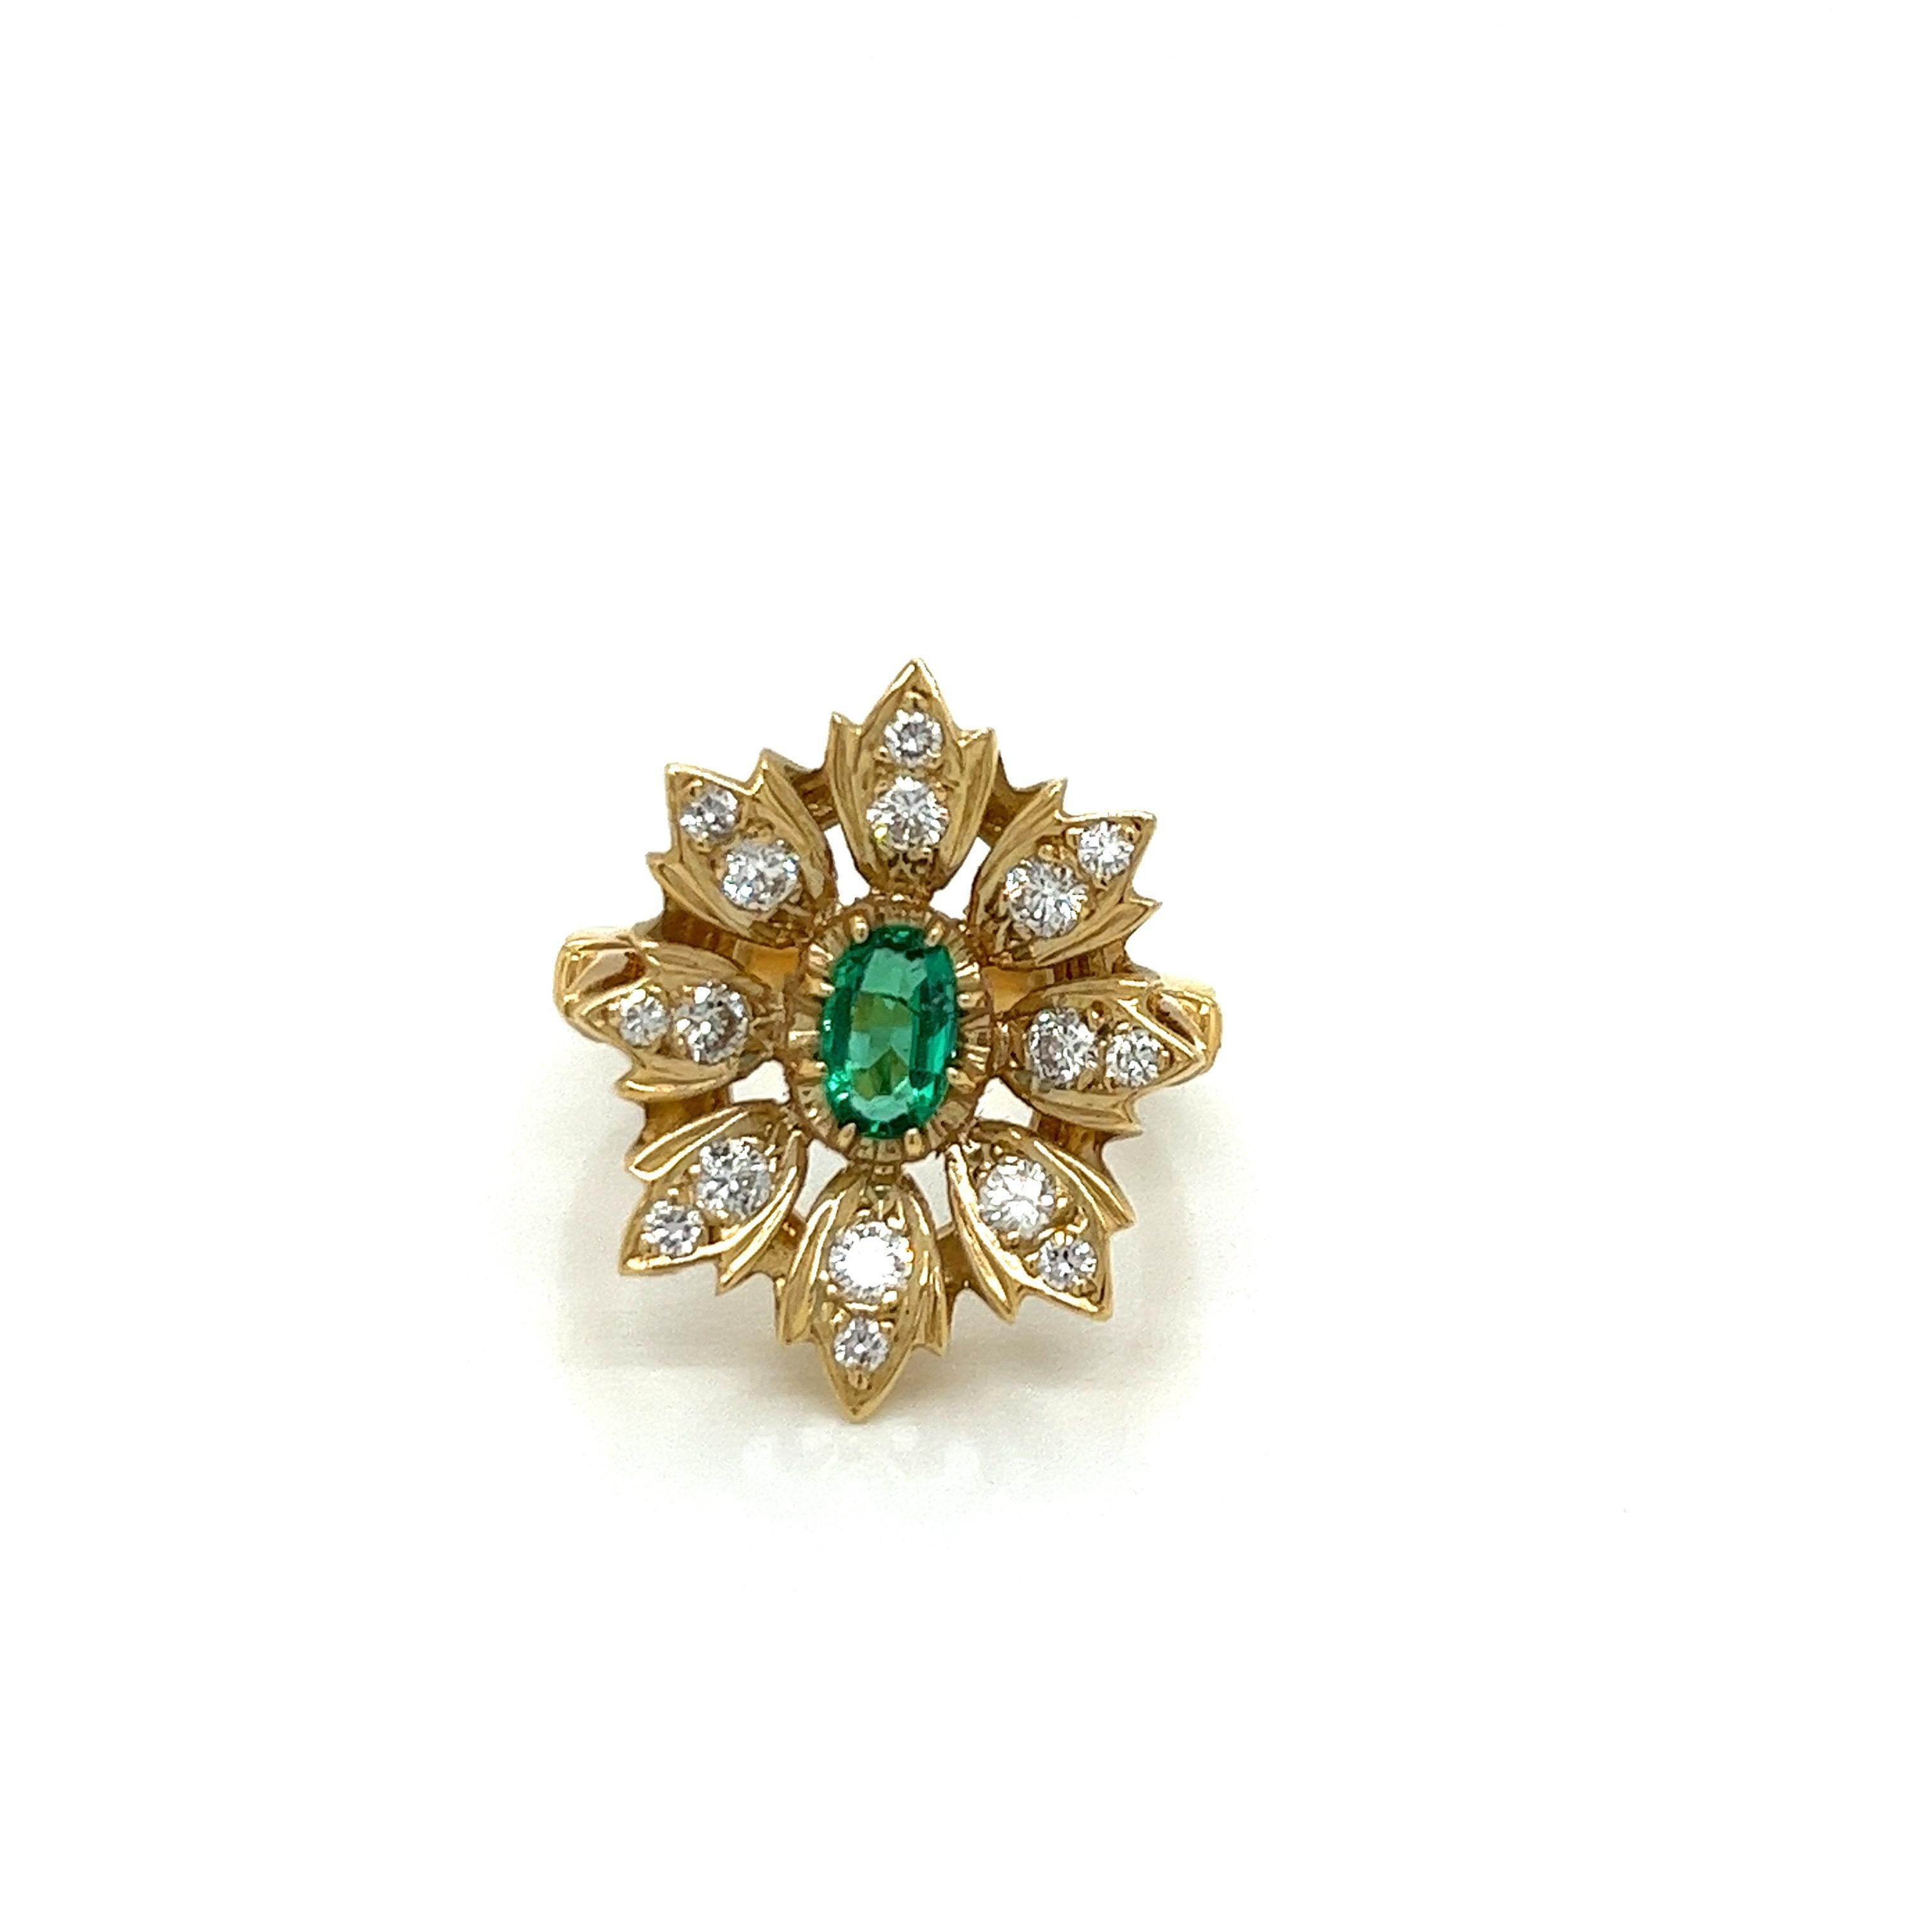 Vintage 14k Gelbgold viktorianischen Reproduktion Smaragd und Diamant-Ring - Hergestellt in den 1980er Jahren, ist diese viktorianische Reproduktion Ring mit einem 6x4mm lebendige grüne Smaragd mit einem Gewicht von etwa .50ct gesetzt. Die